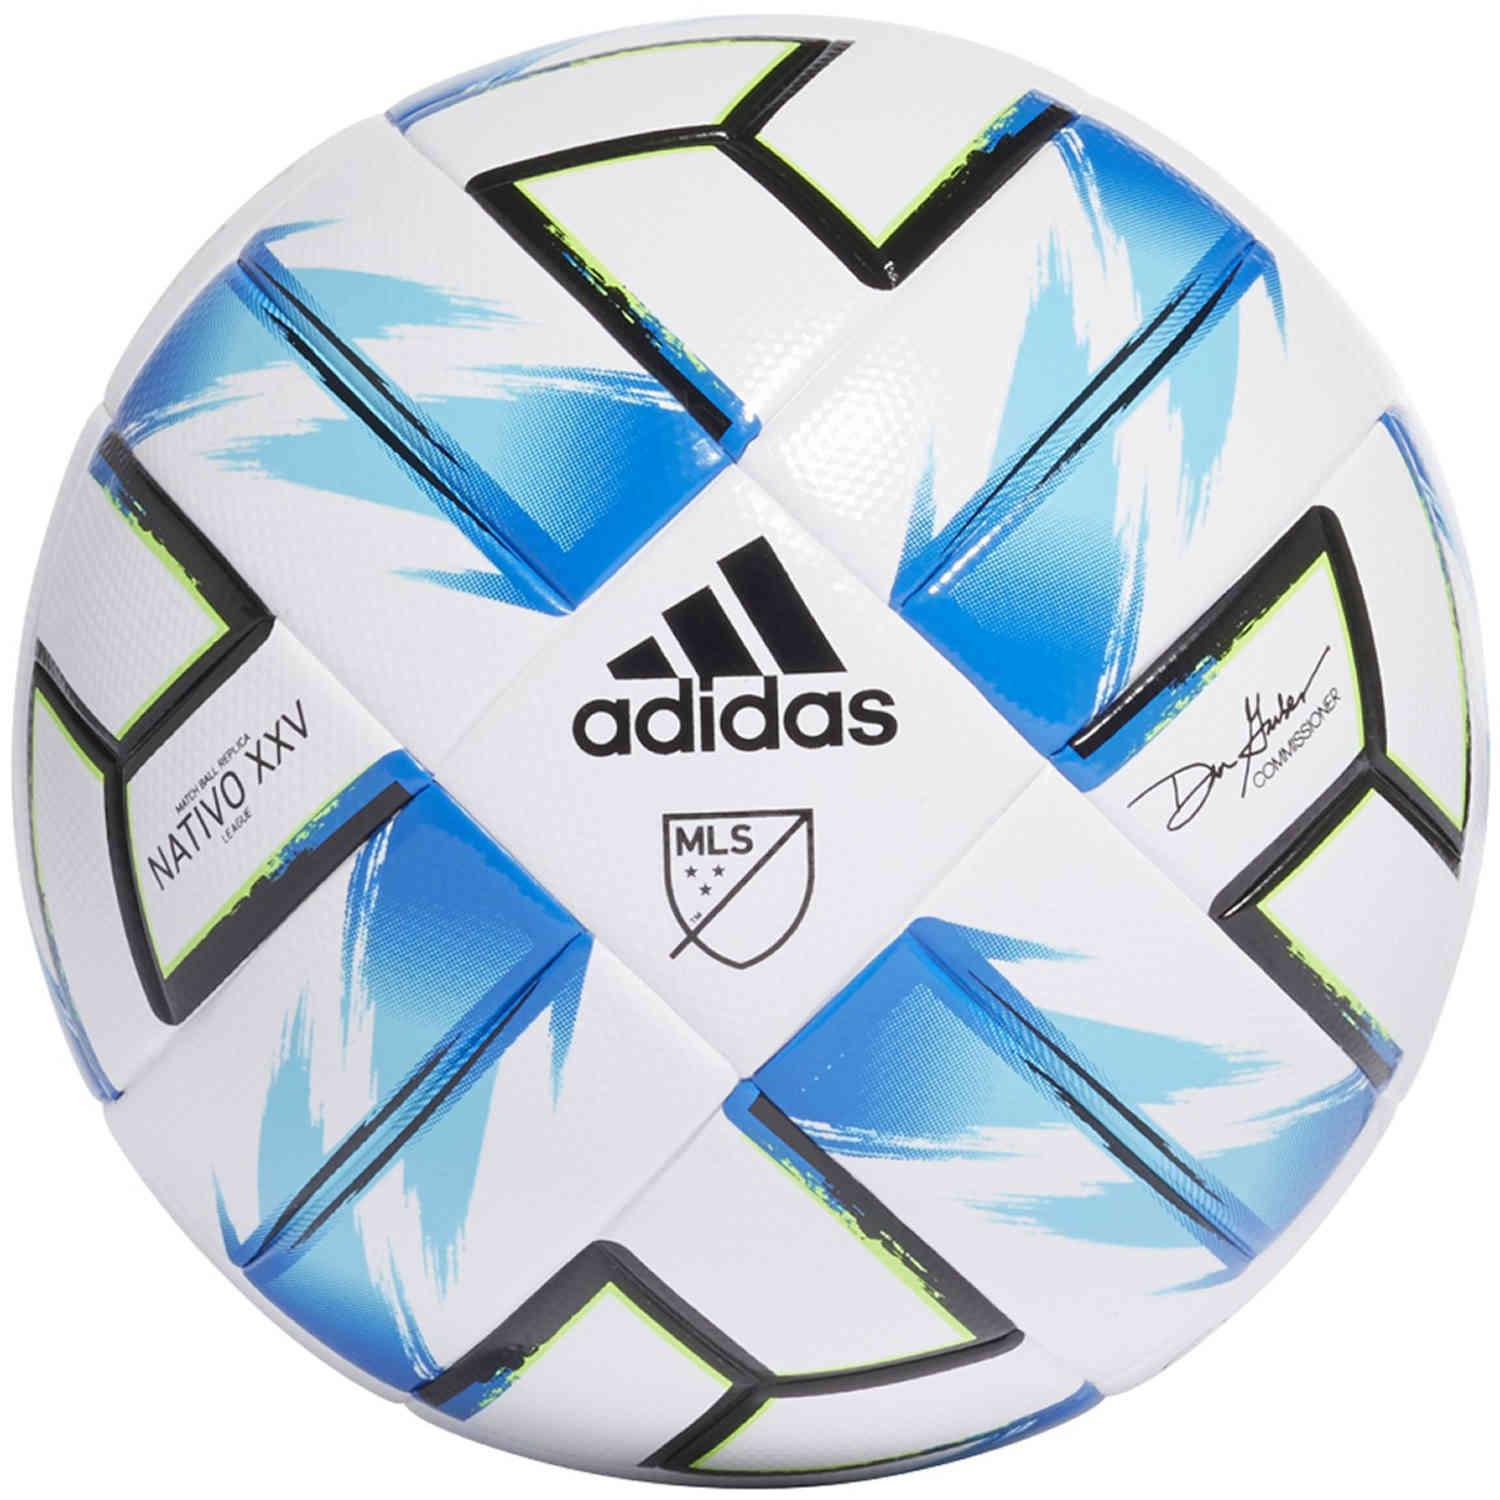 adidas NFHS MLS League Soccer Ball 